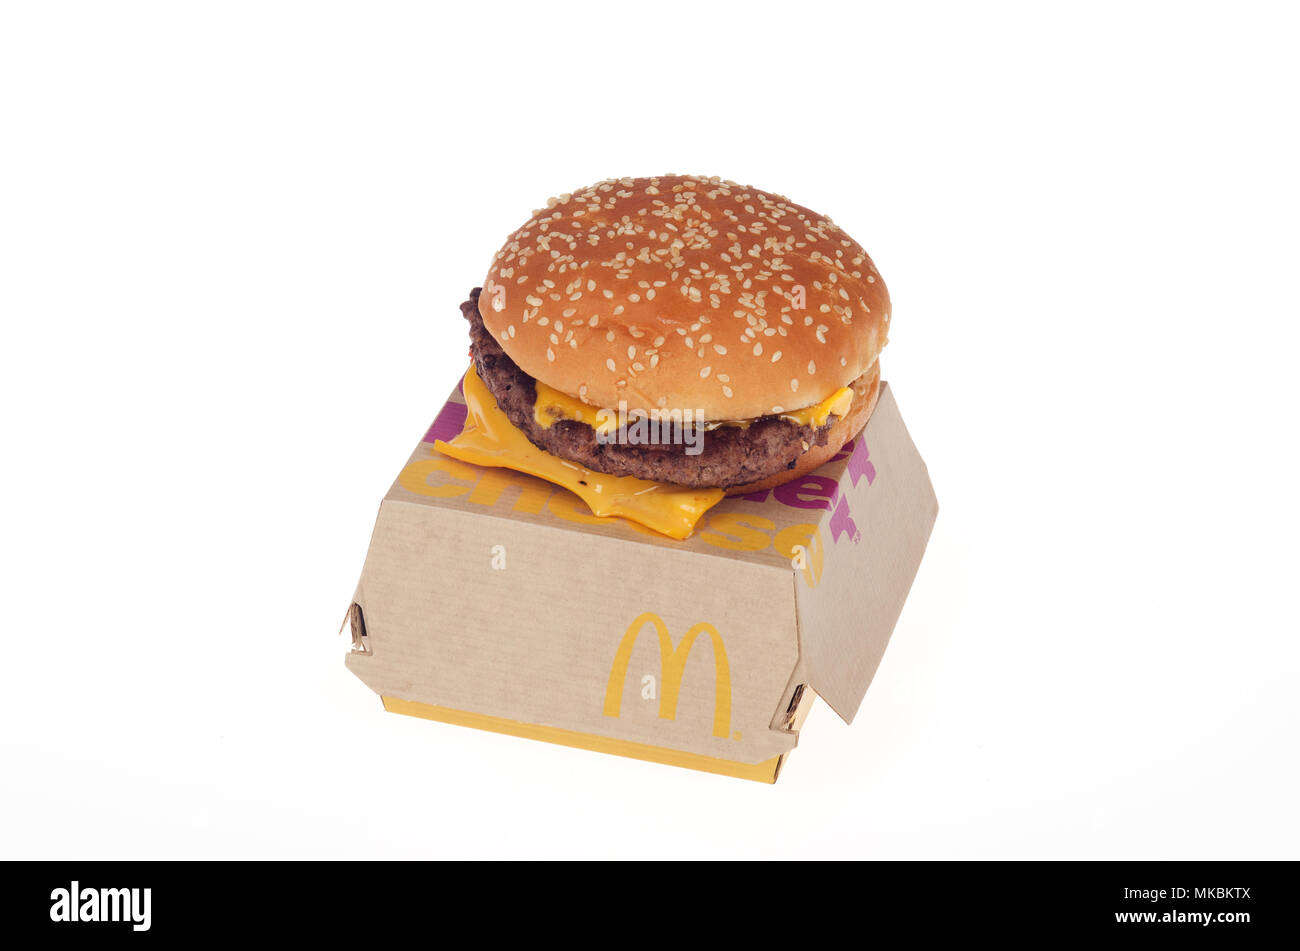 McDonald's nouveau bœuf frais cuit lorsque commandé quater pounder avec du fromage. Le burger congelé jamais juste lancé à l'échelle nationale aux Etats-Unis en mai 2018. Banque D'Images